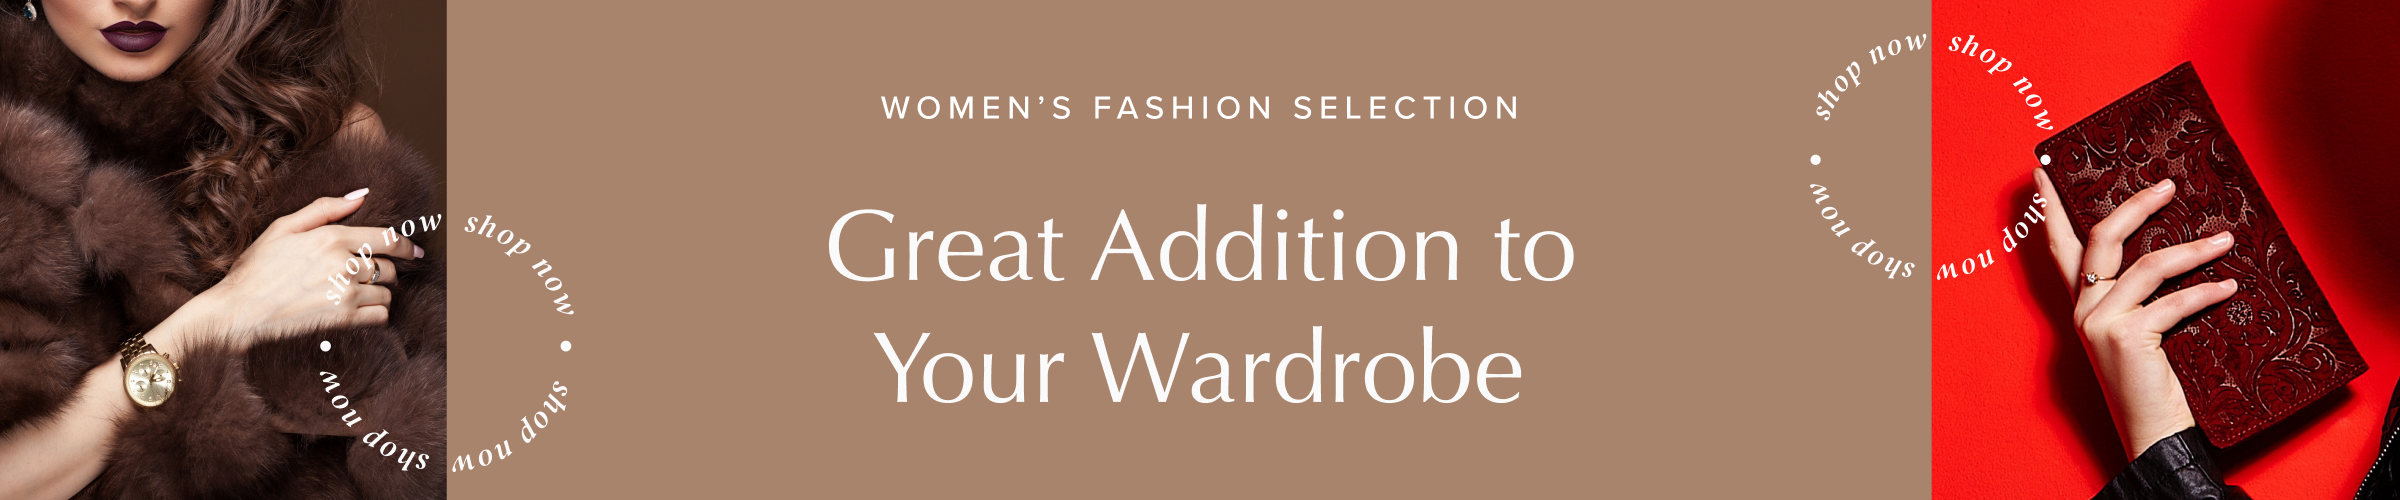 Women's Fashion Selection